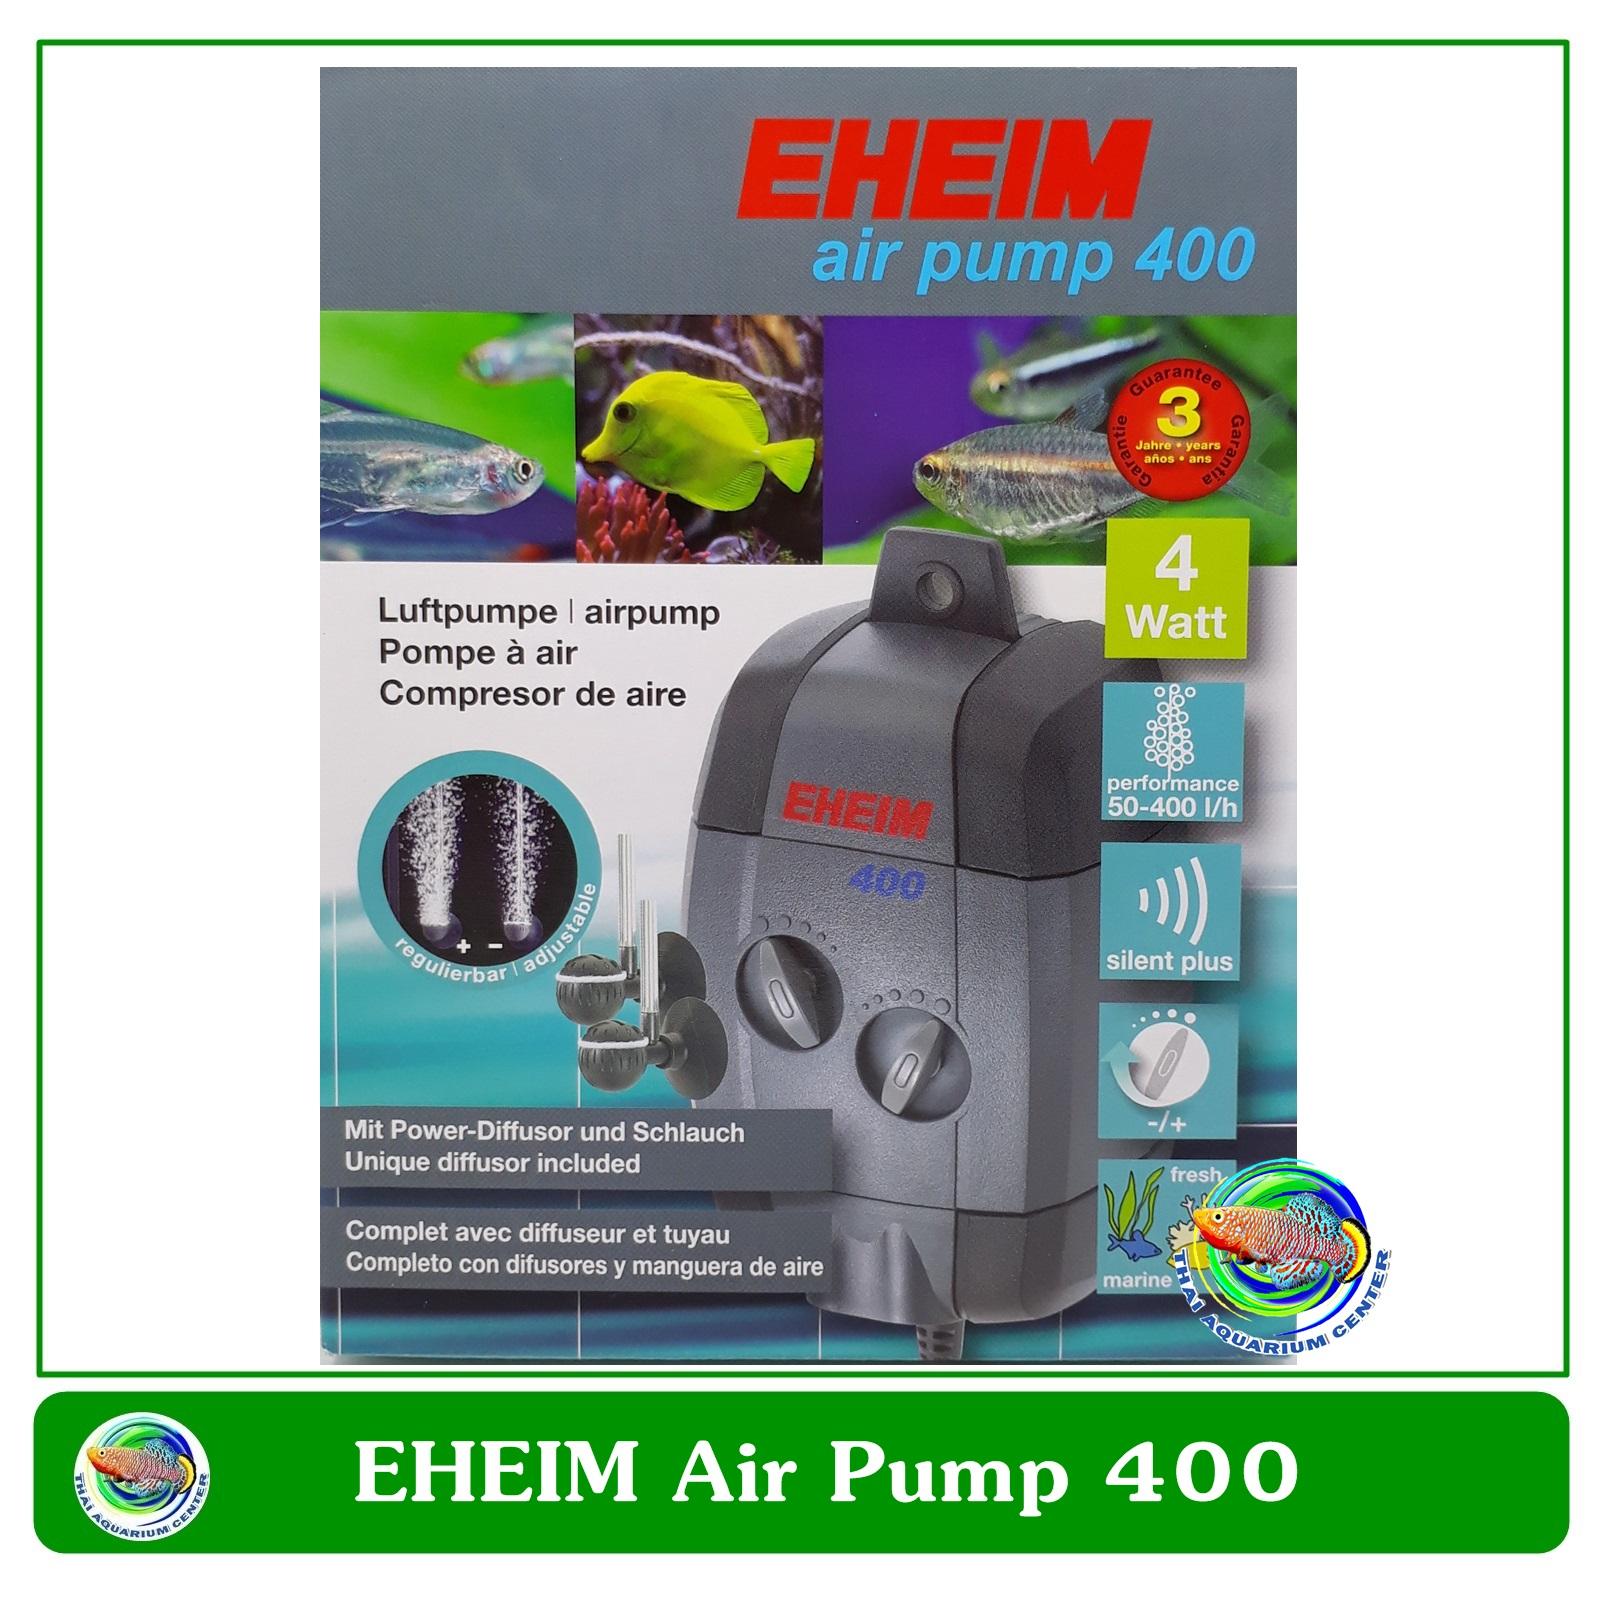 Eheim Air Pump 400 ปัํมออกซิเจน 2 ทาง รุ่น Eheim 400